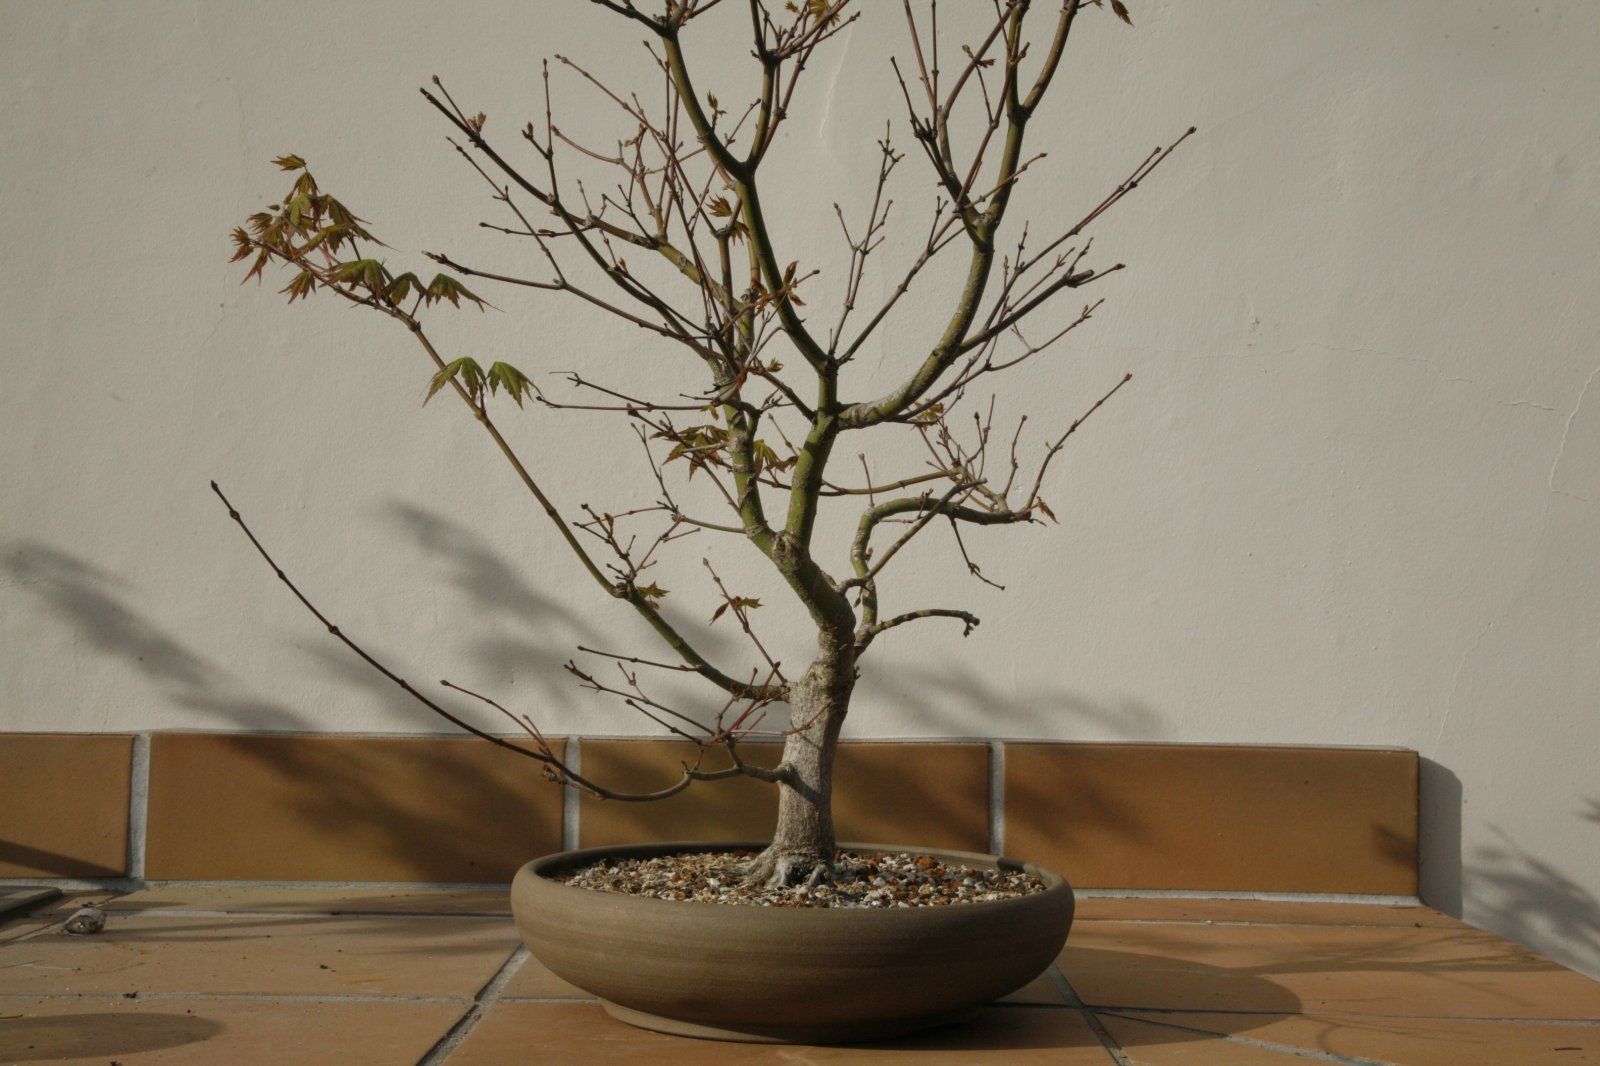 Acer palmatum #1